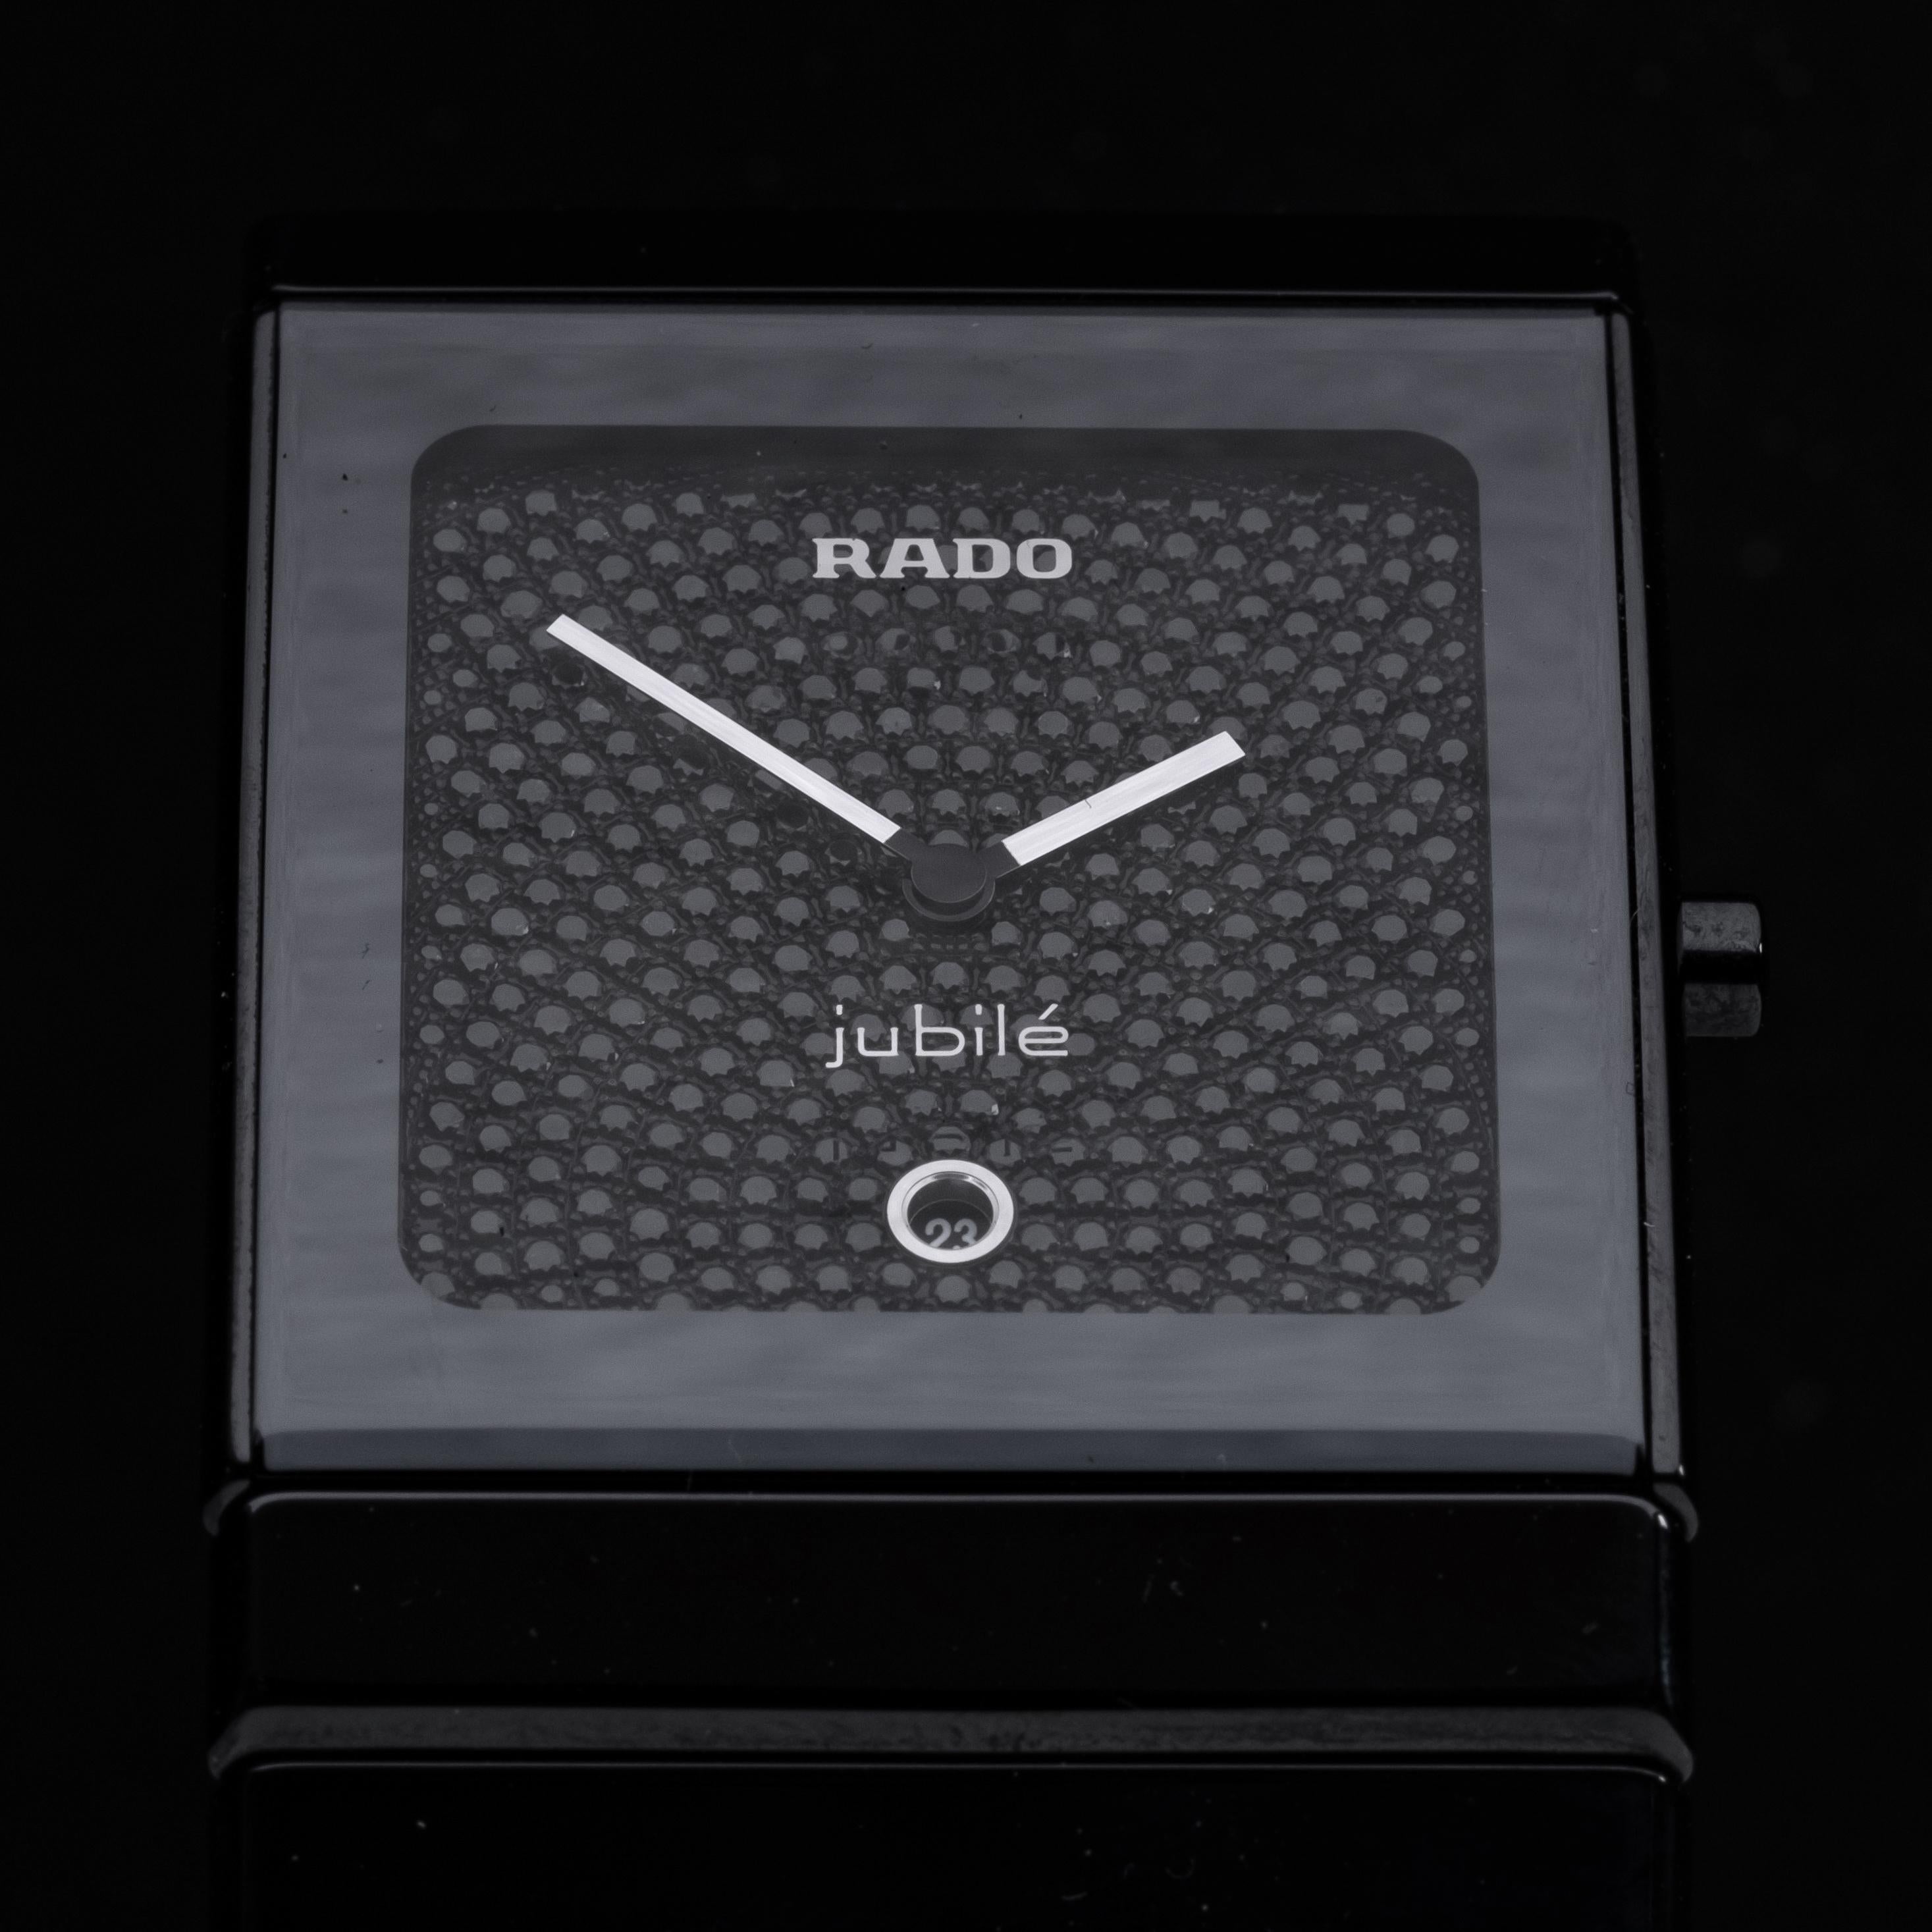 Montre-bracelet Rado Ceramica Jubile pour homme avec cadran en diamant noir. Prix de détail 25770 $, livré avec boîte et livret. Le bracelet s'adapte à un poignet d'environ 8 pouces (taille normale), la largeur du bracelet est de 35 mm, le boîtier -